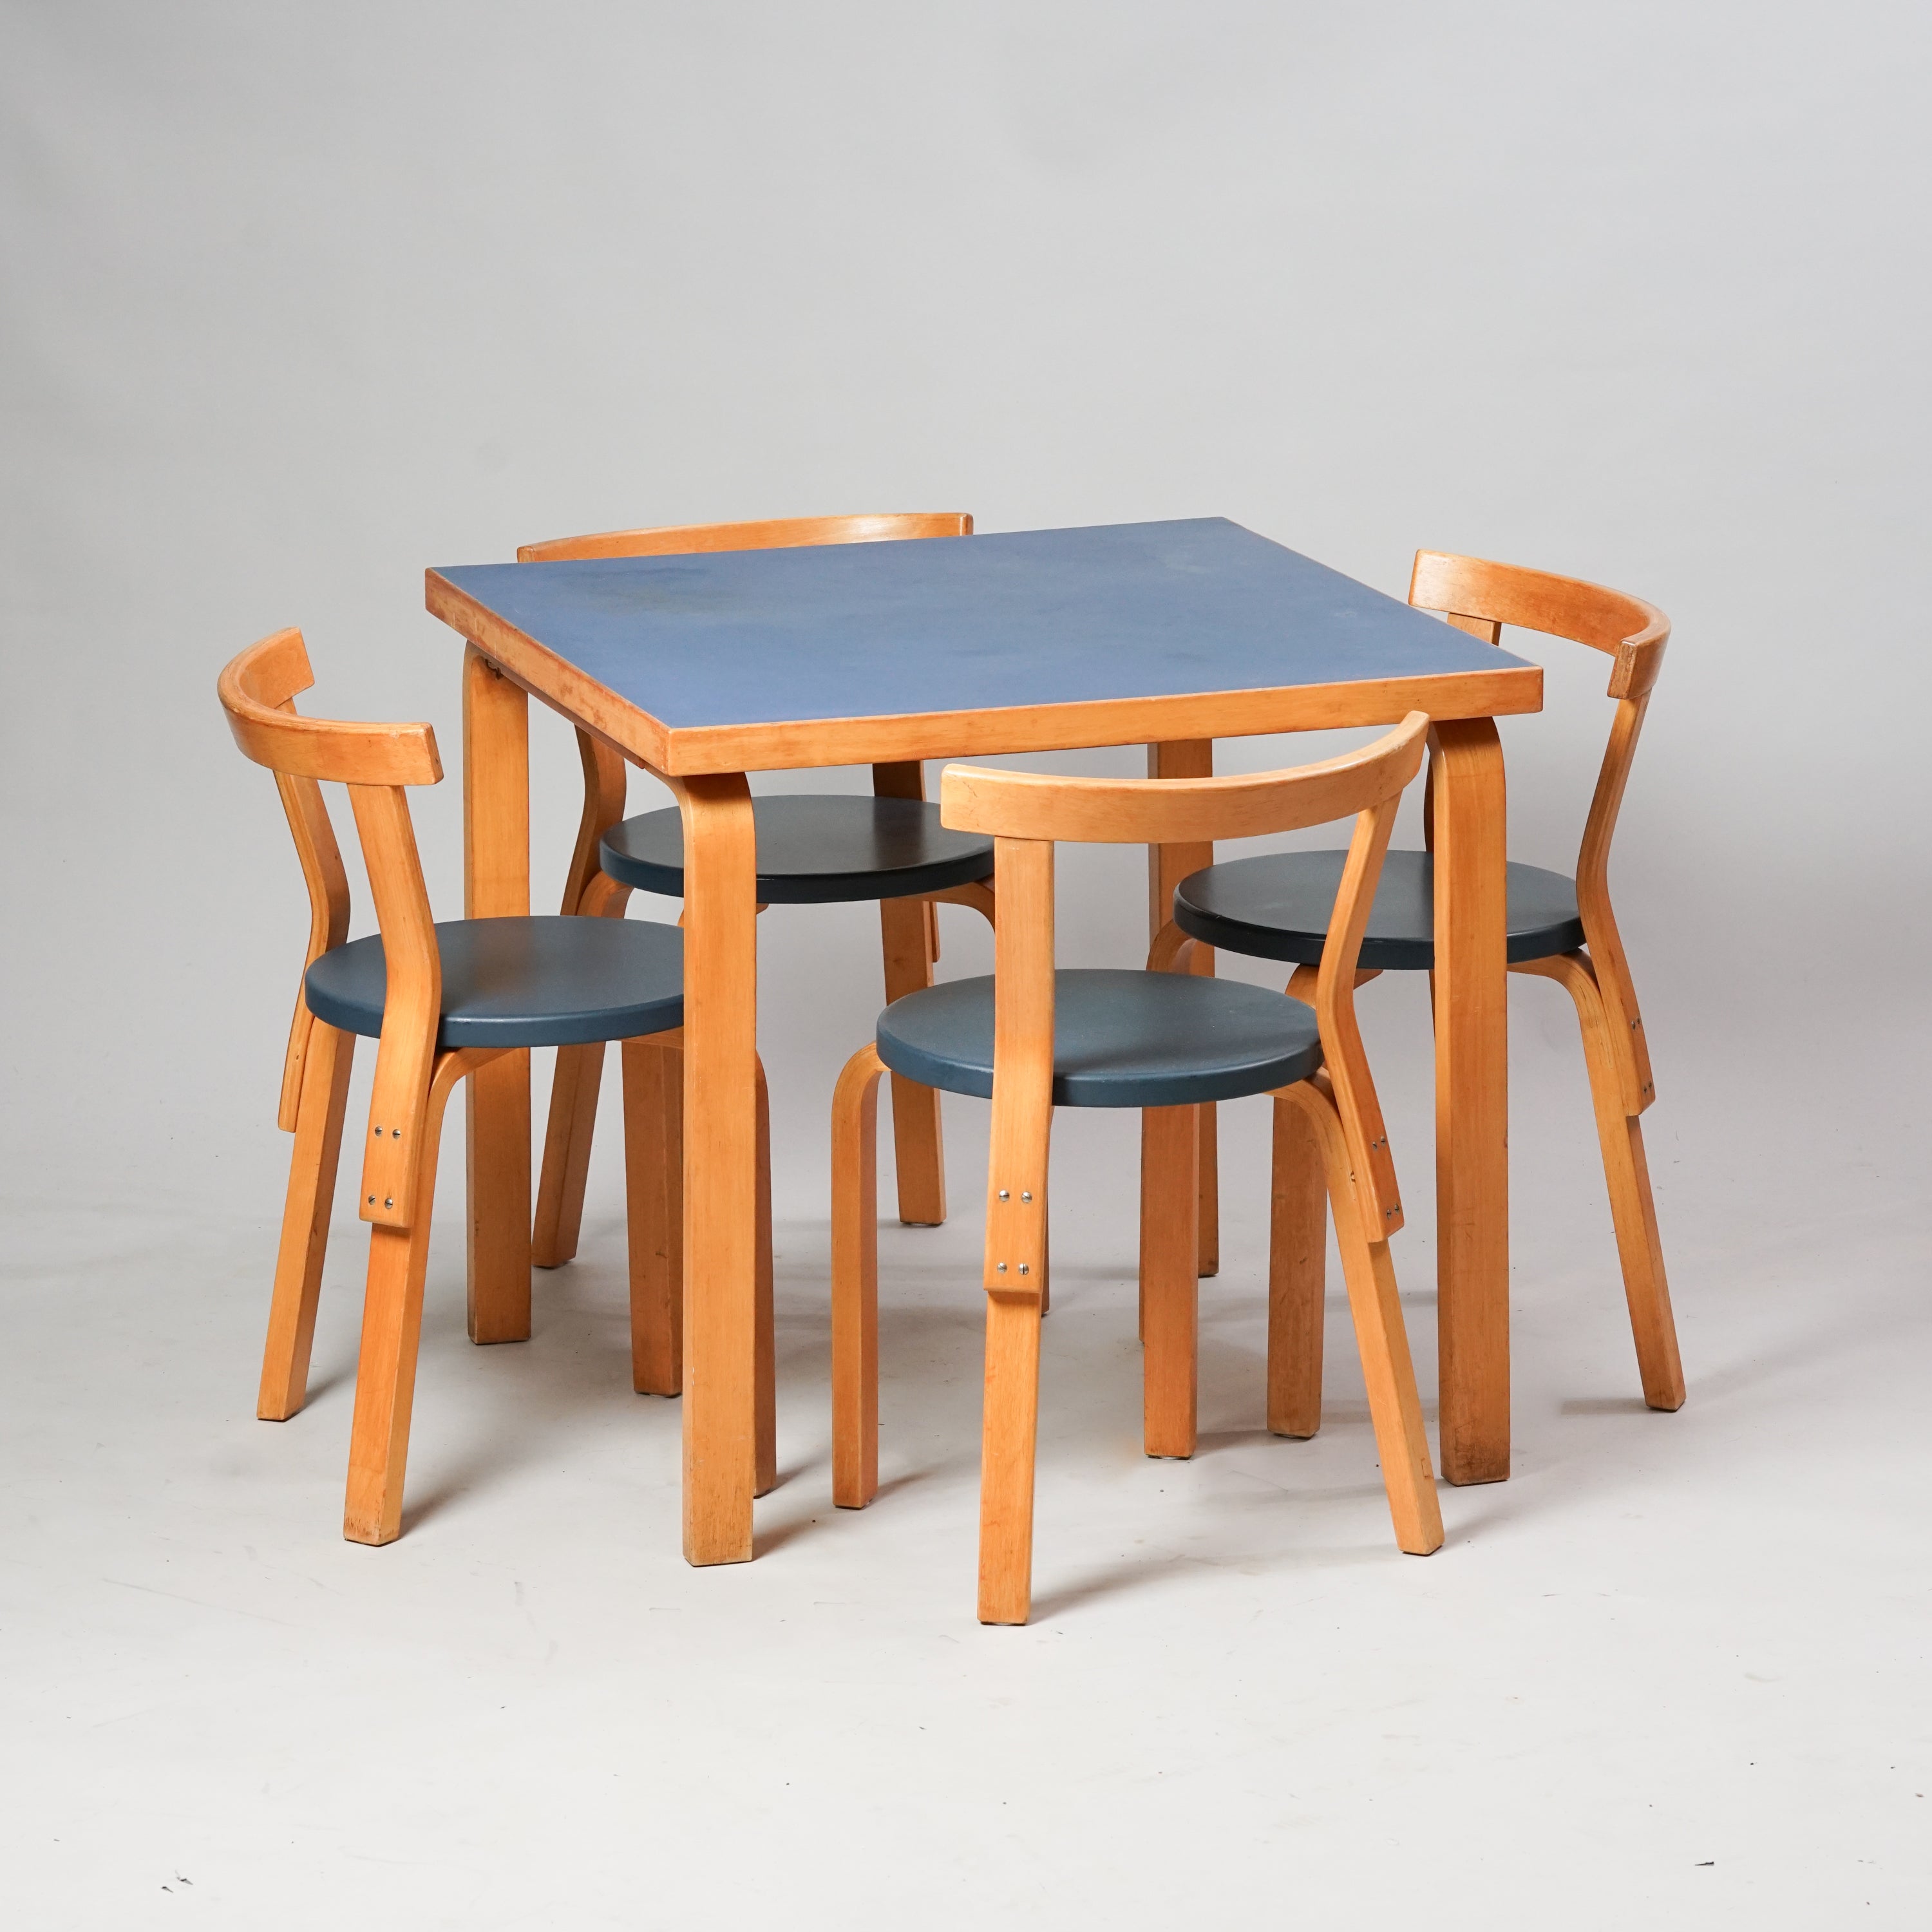 Neliönmuotoinen puupöytä, jonka työtaso on sininen. Neljä tuolia ovat kaikki samanlaisia. Tuolit ovat tehty puusta, ja niiden pyöreät istuimet ovat väriltään harmahtavan siniset.